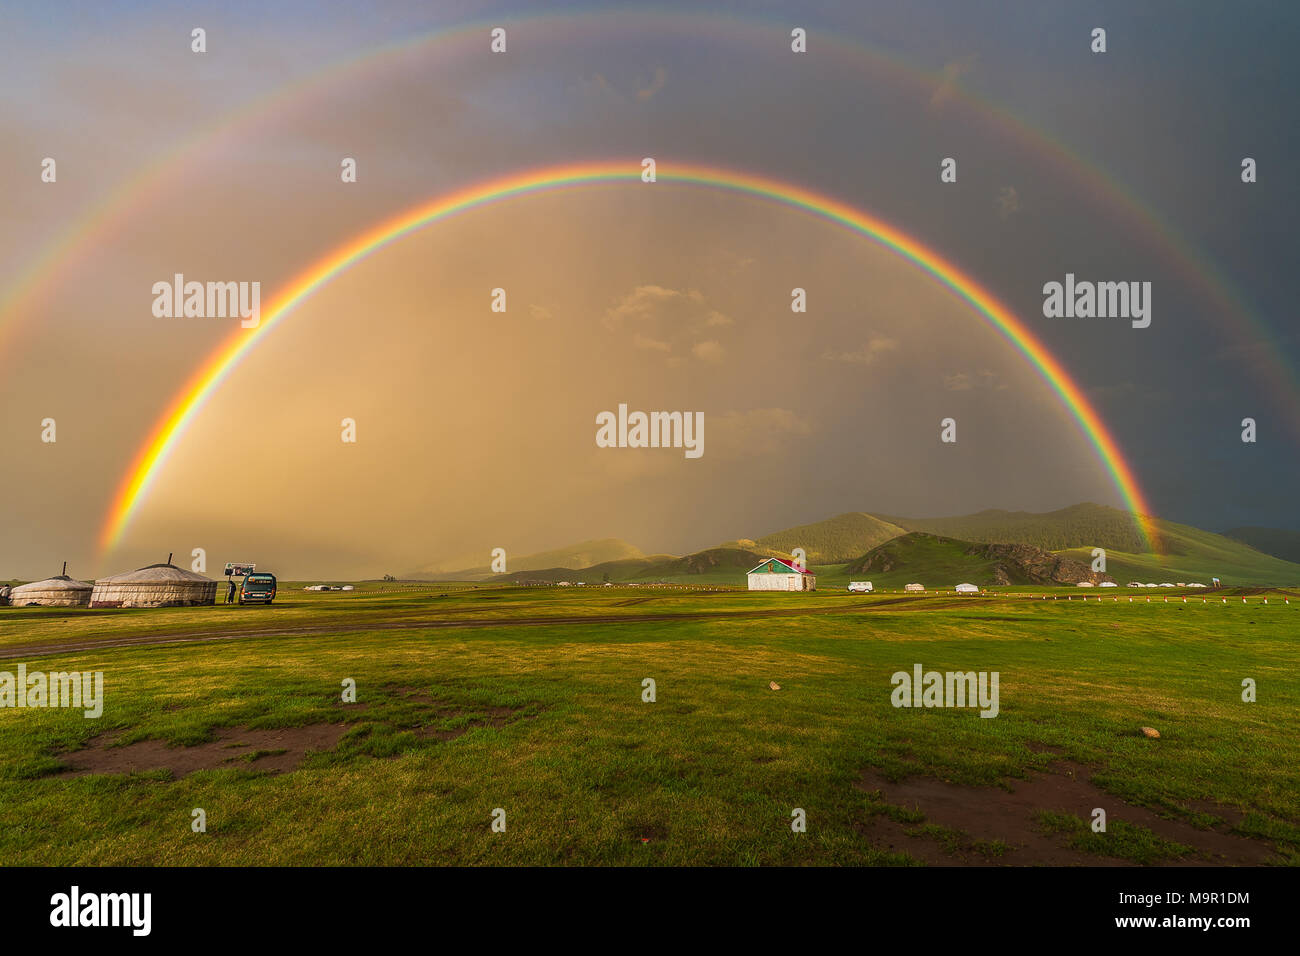 Doppelter Regenbogen über Nomad Jurten in eine grüne Landschaft, Mongolei Stockfoto